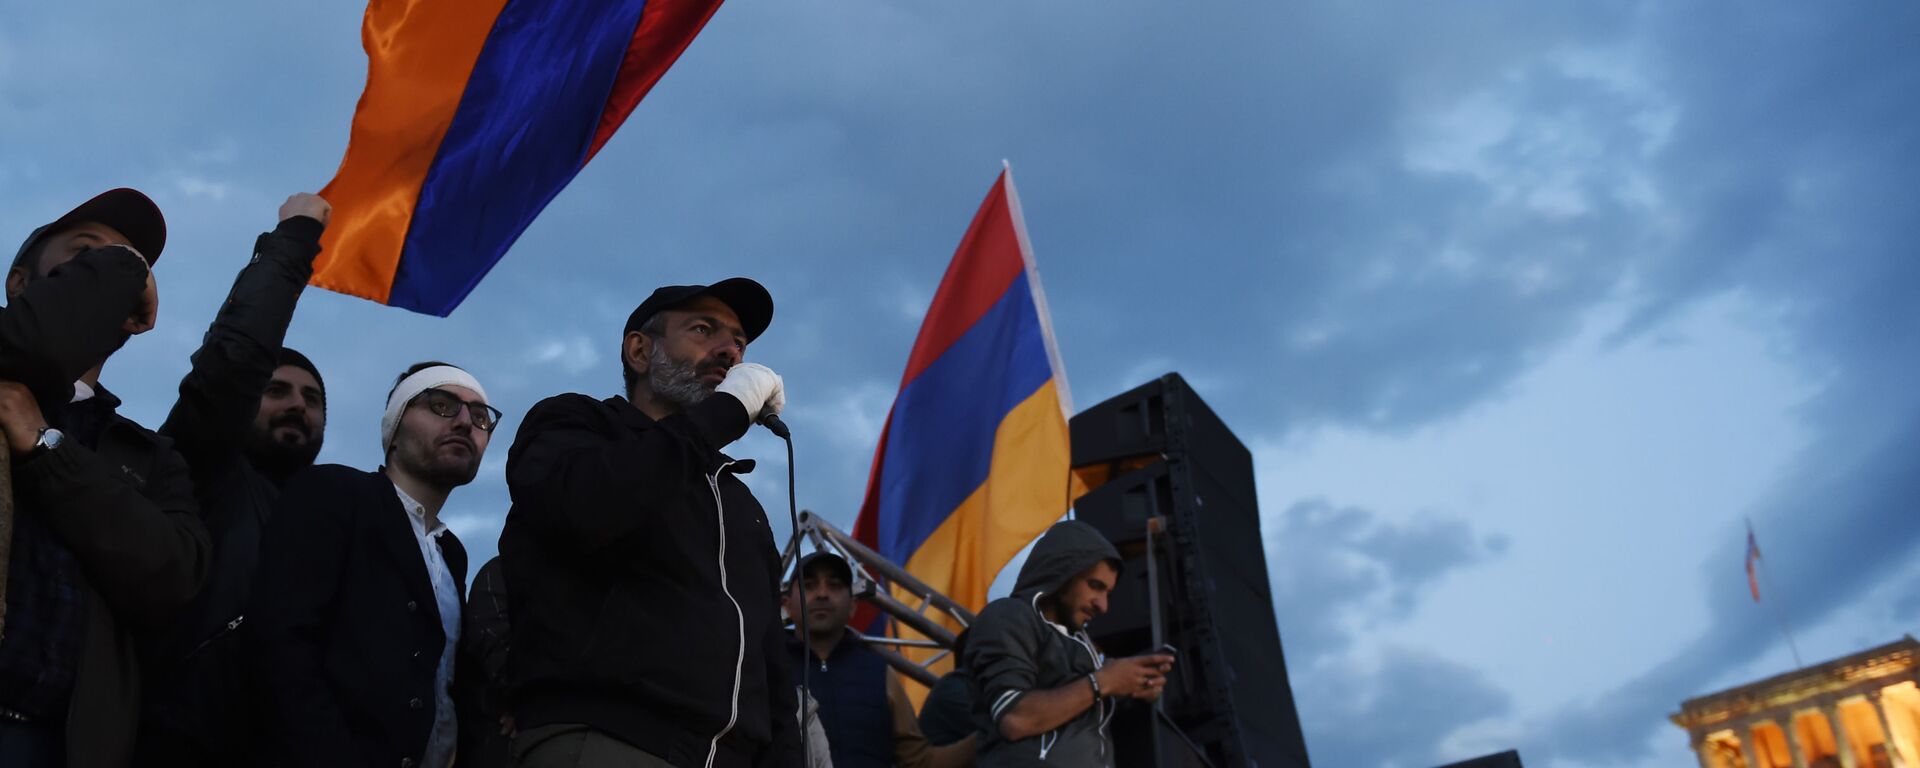 زعيم المعارضة الأرمينية، نيكولا باشنيان في يريفان، أرمينيا 23 أبريل/ نيسان 2018  - سبوتنيك عربي, 1920, 13.09.2022